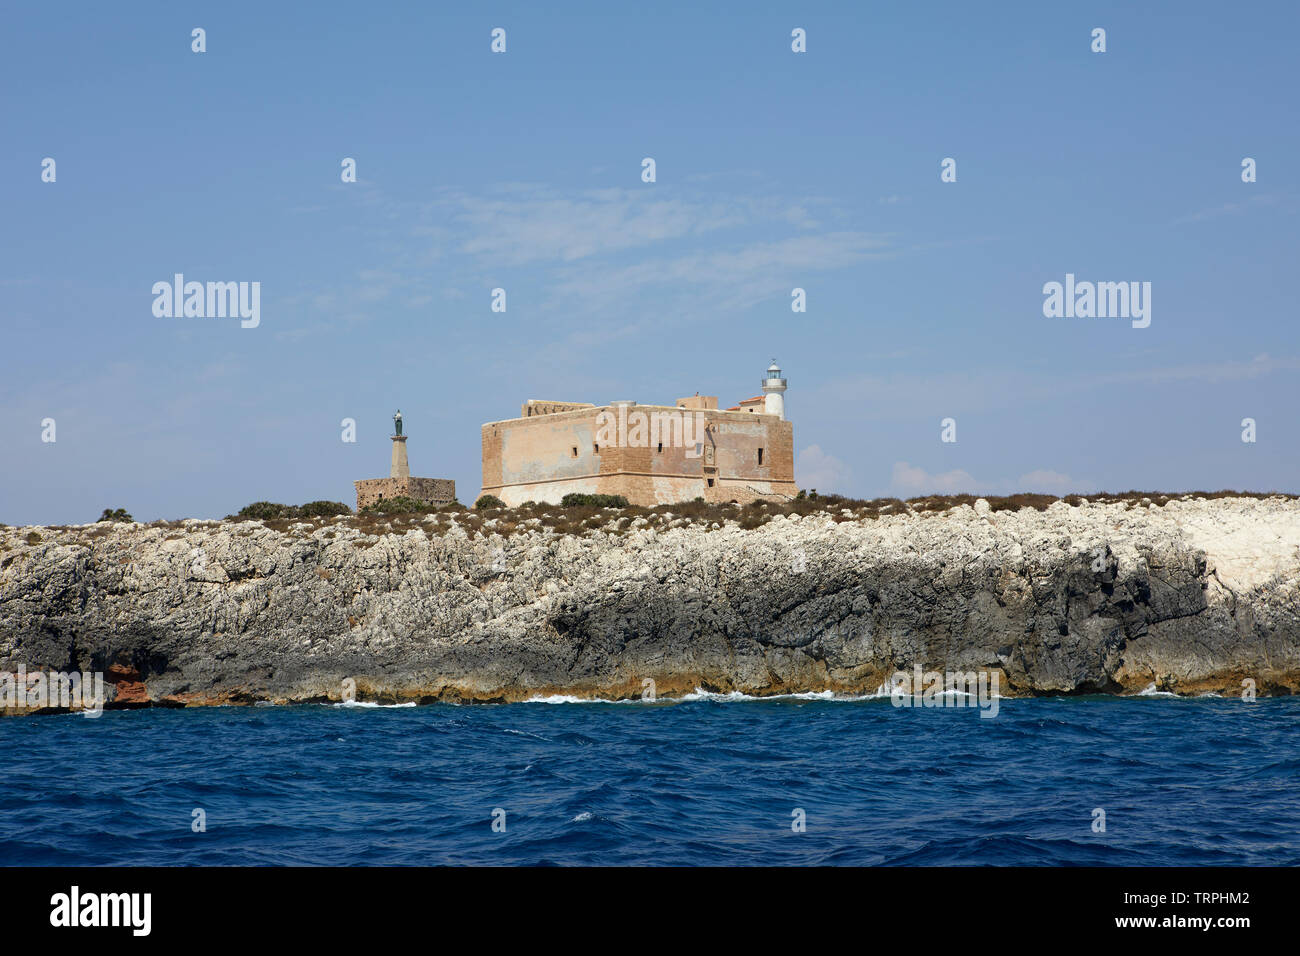 The fort of Portopalo di Capo Passero, Sicily, Italy Stock Photo